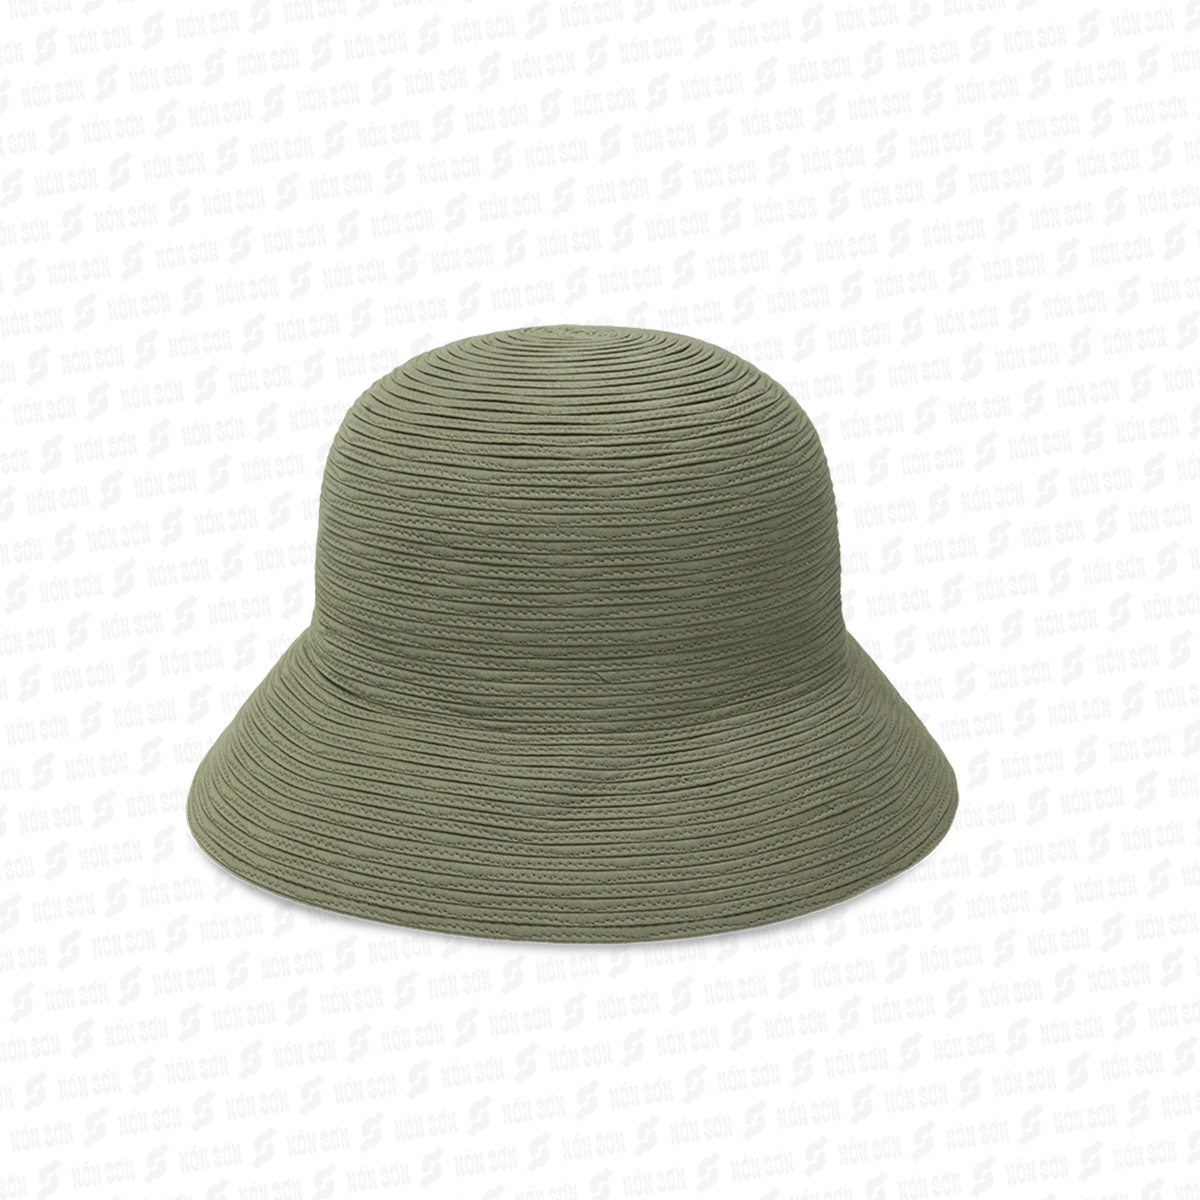 Mũ vành thời trang NÓN SƠN XH001-97-XR1